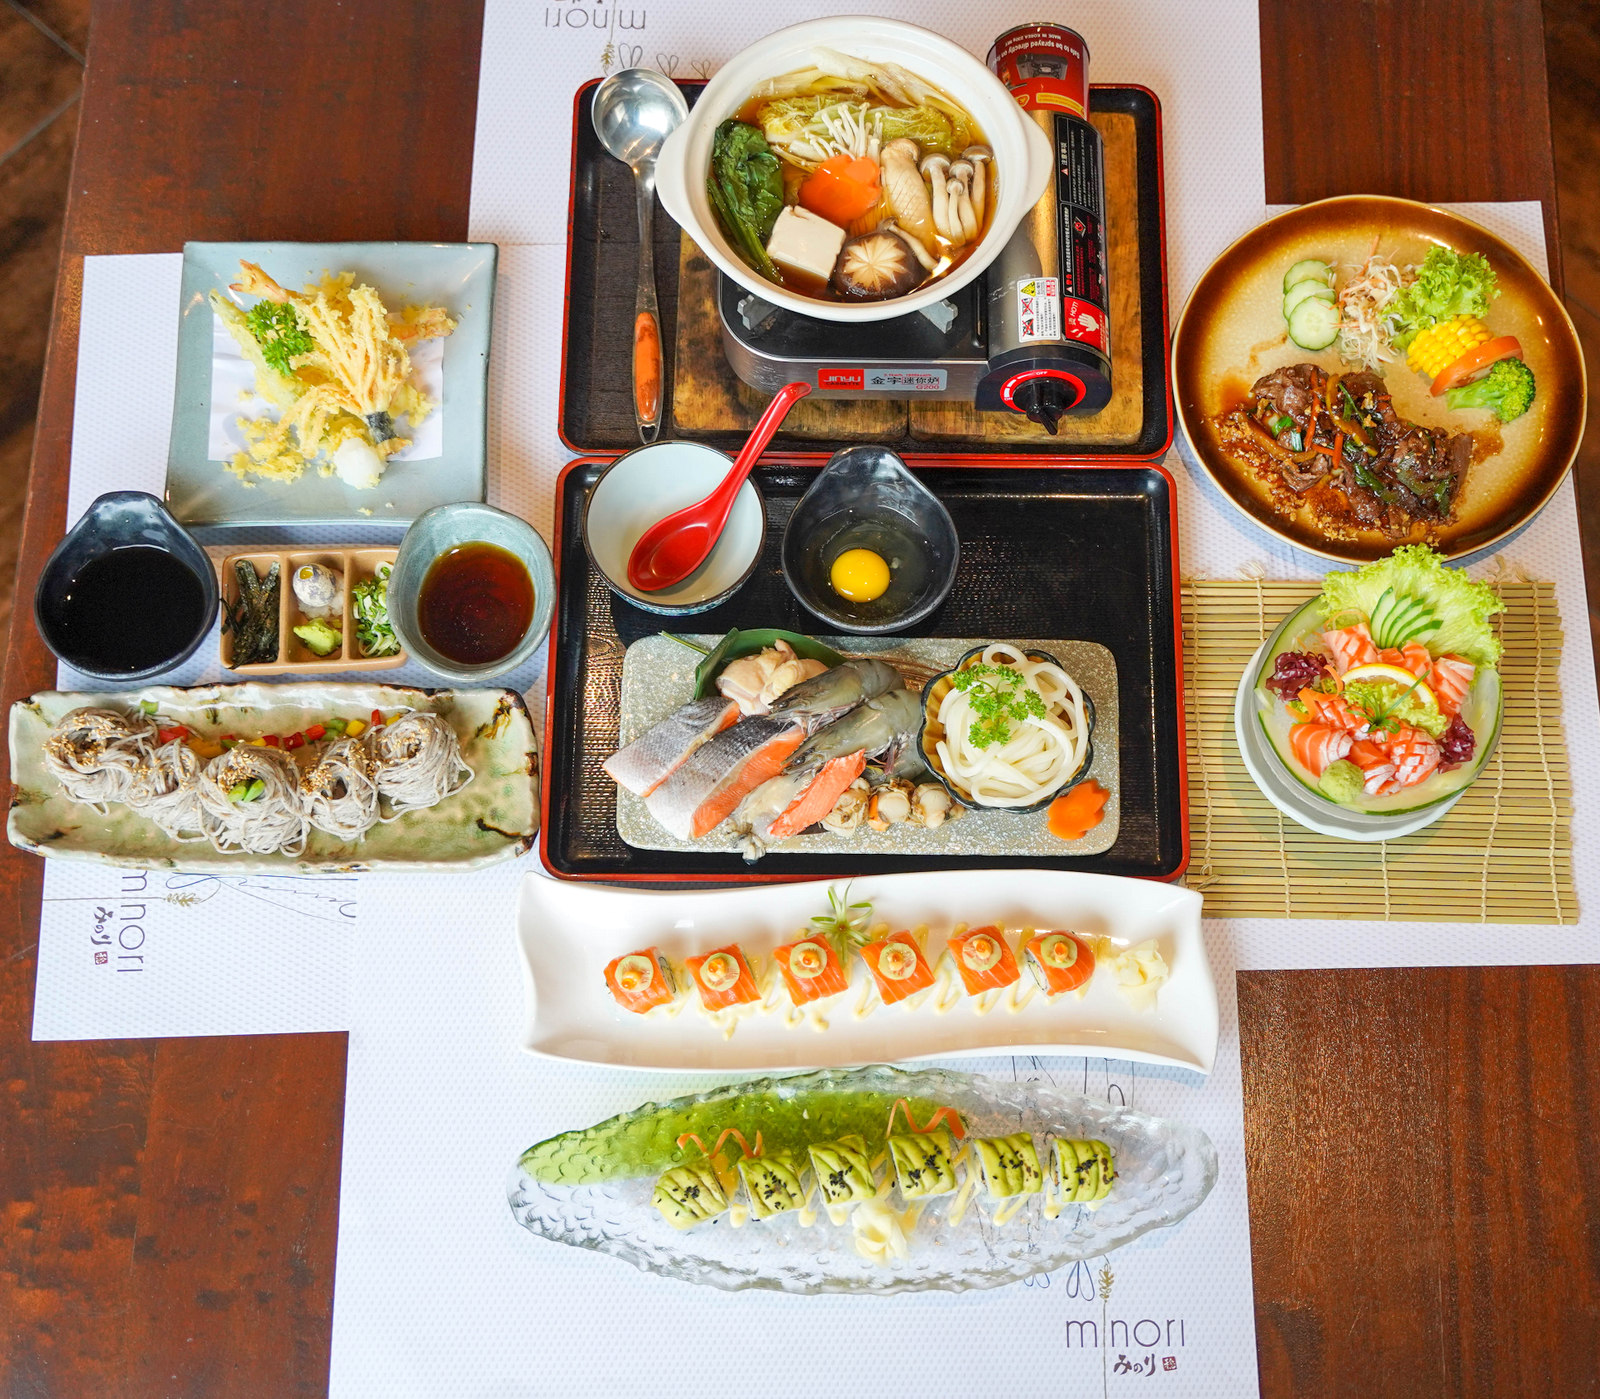 minori japanese restaurant: sashimi to sushi rolls, nabe & noodles to yakiniku